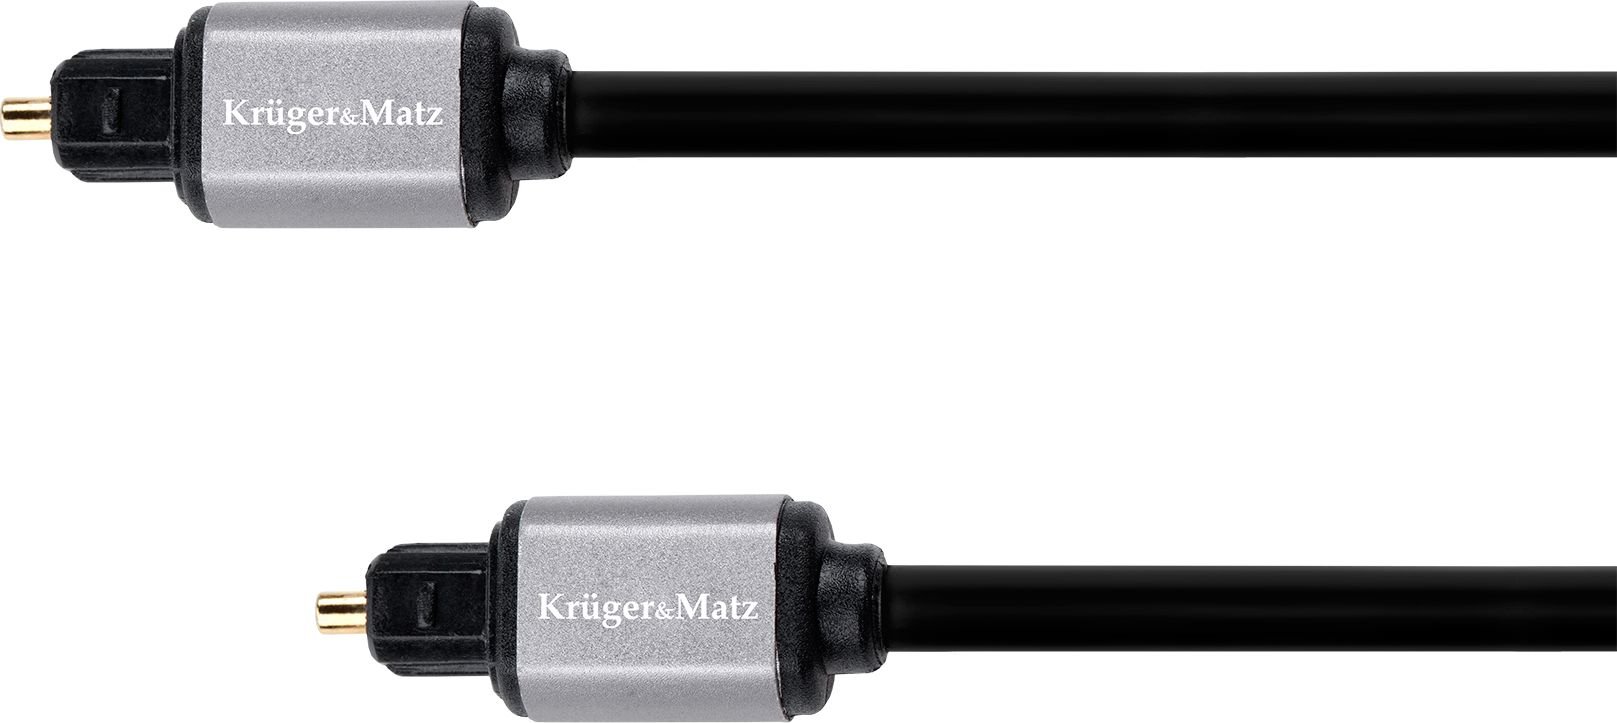 Kruger&Matz Toslink - Cablu Toslink 2m negru (KM1223)